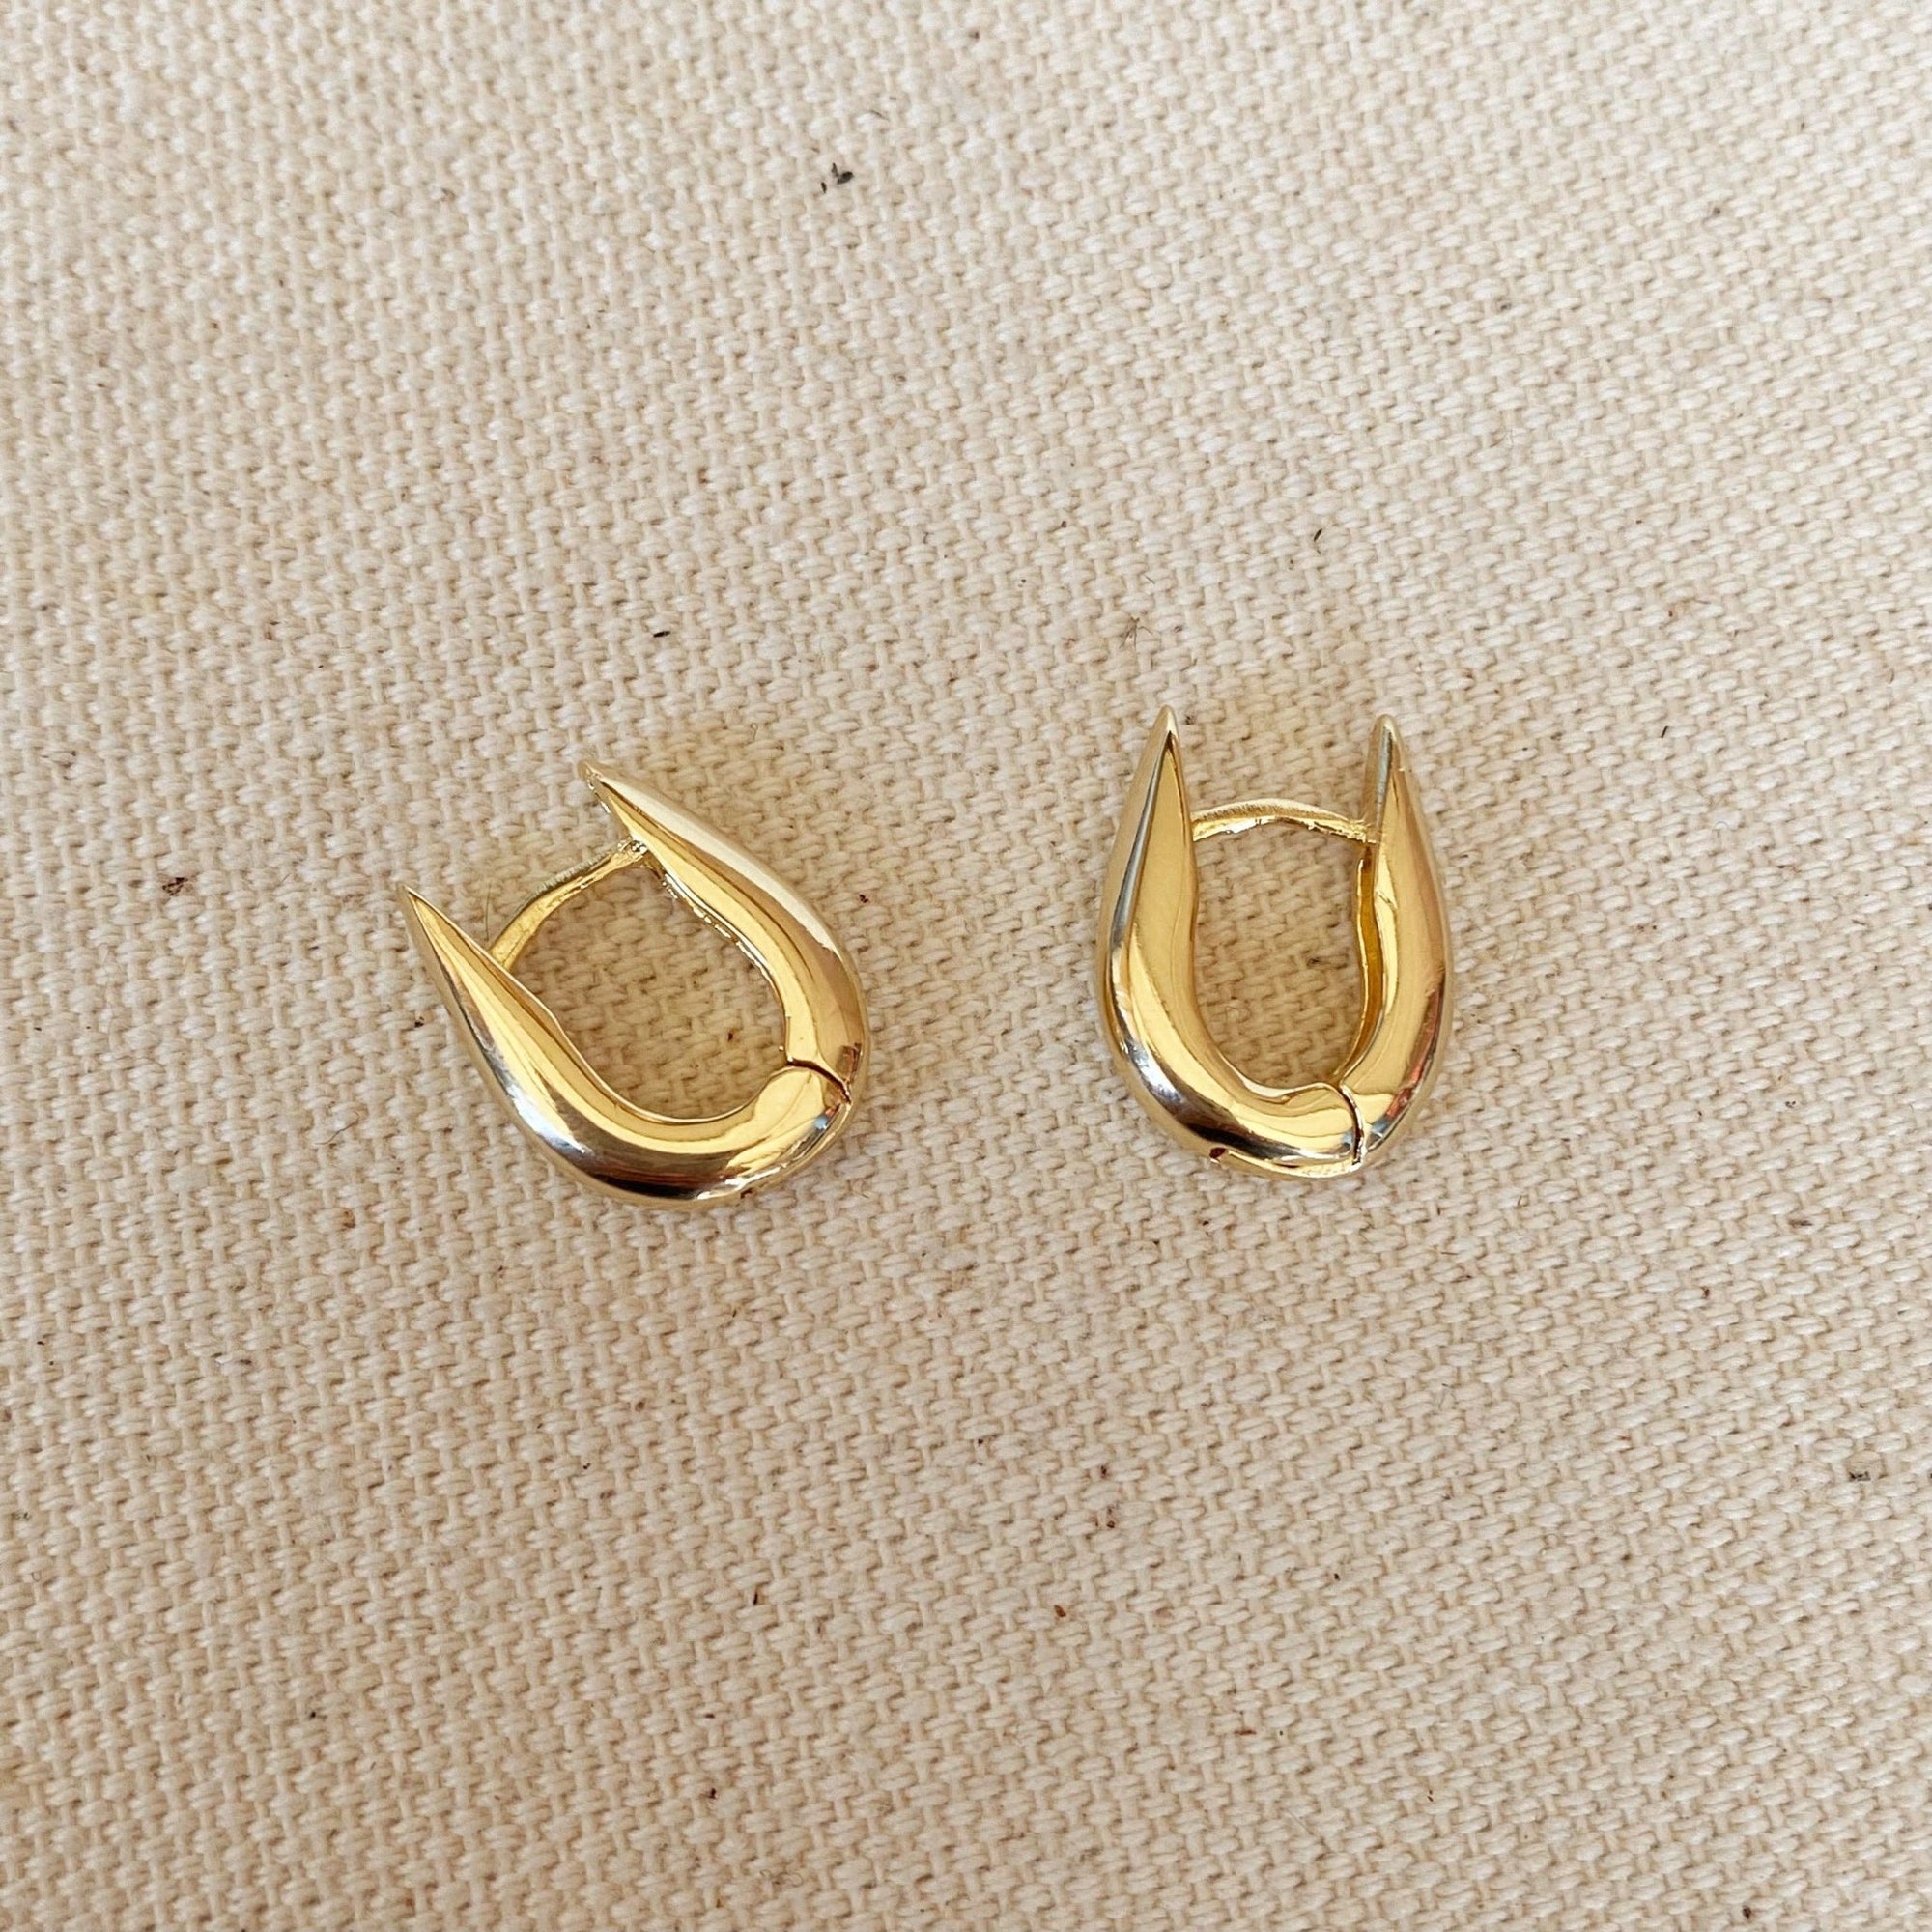 U Shaped Hoop Earrings- 18k Gold Filled - Abigail Fox Designs